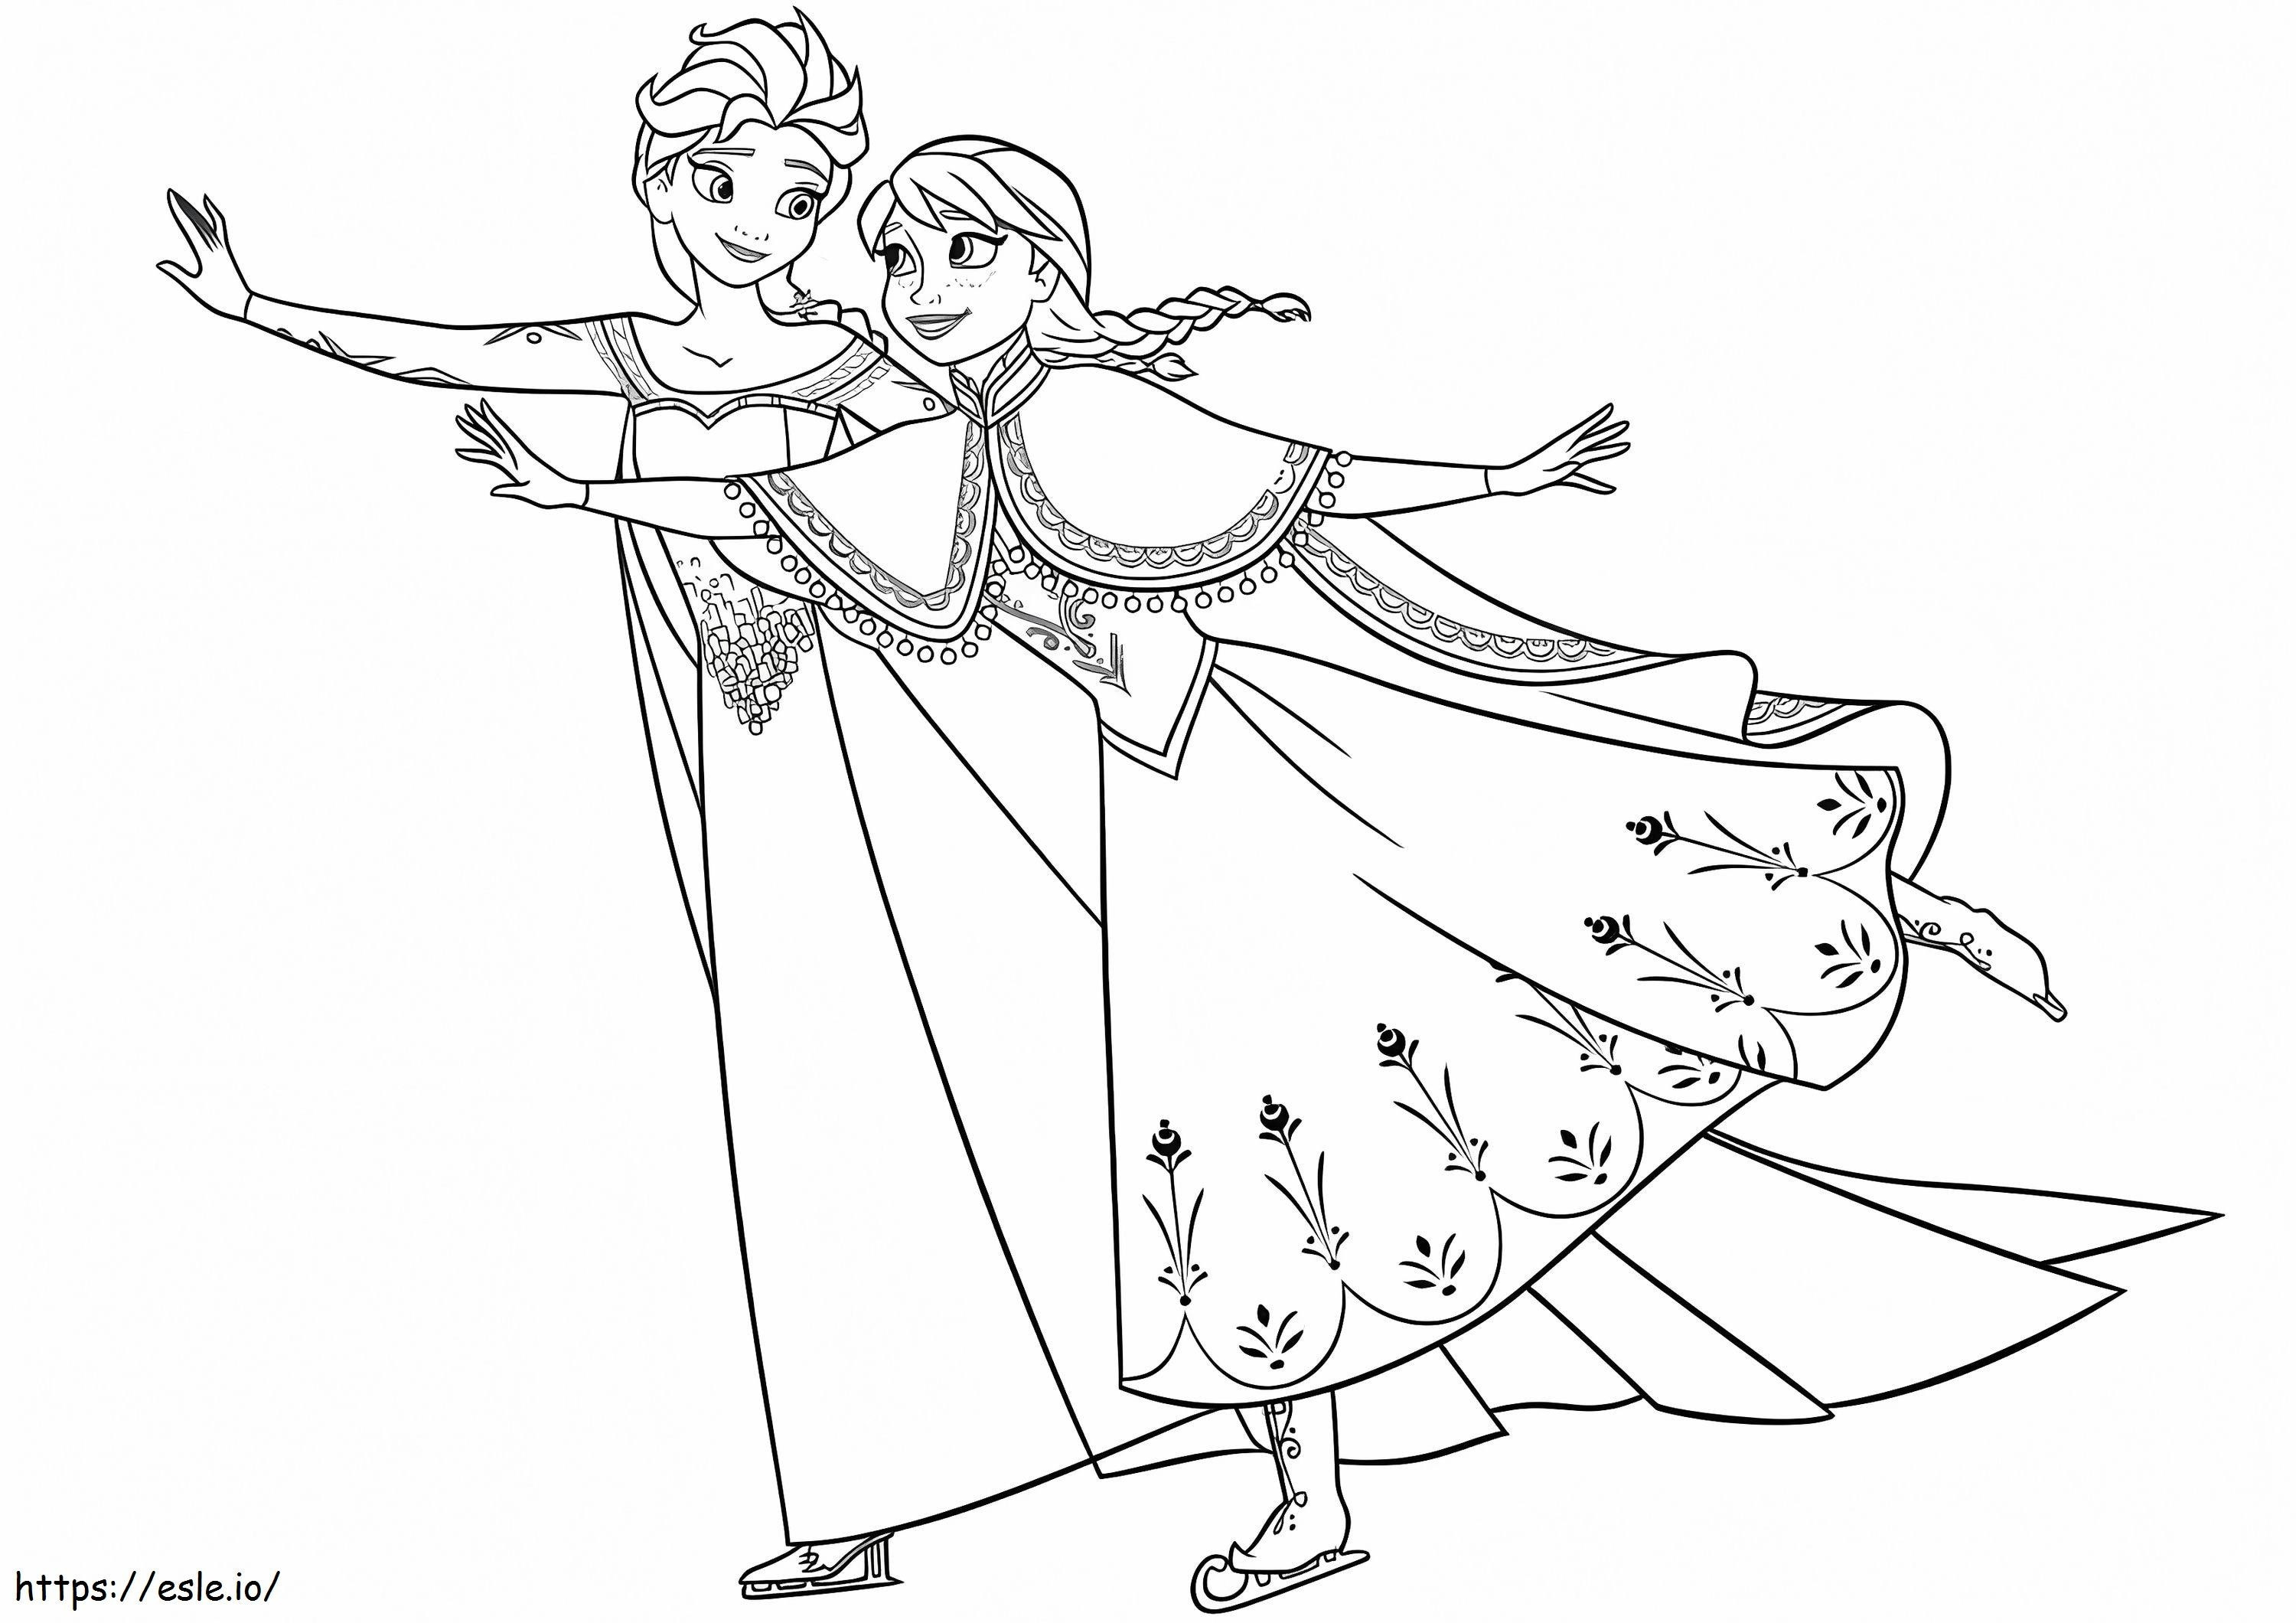 Elsa und Anna 2 ausmalbilder